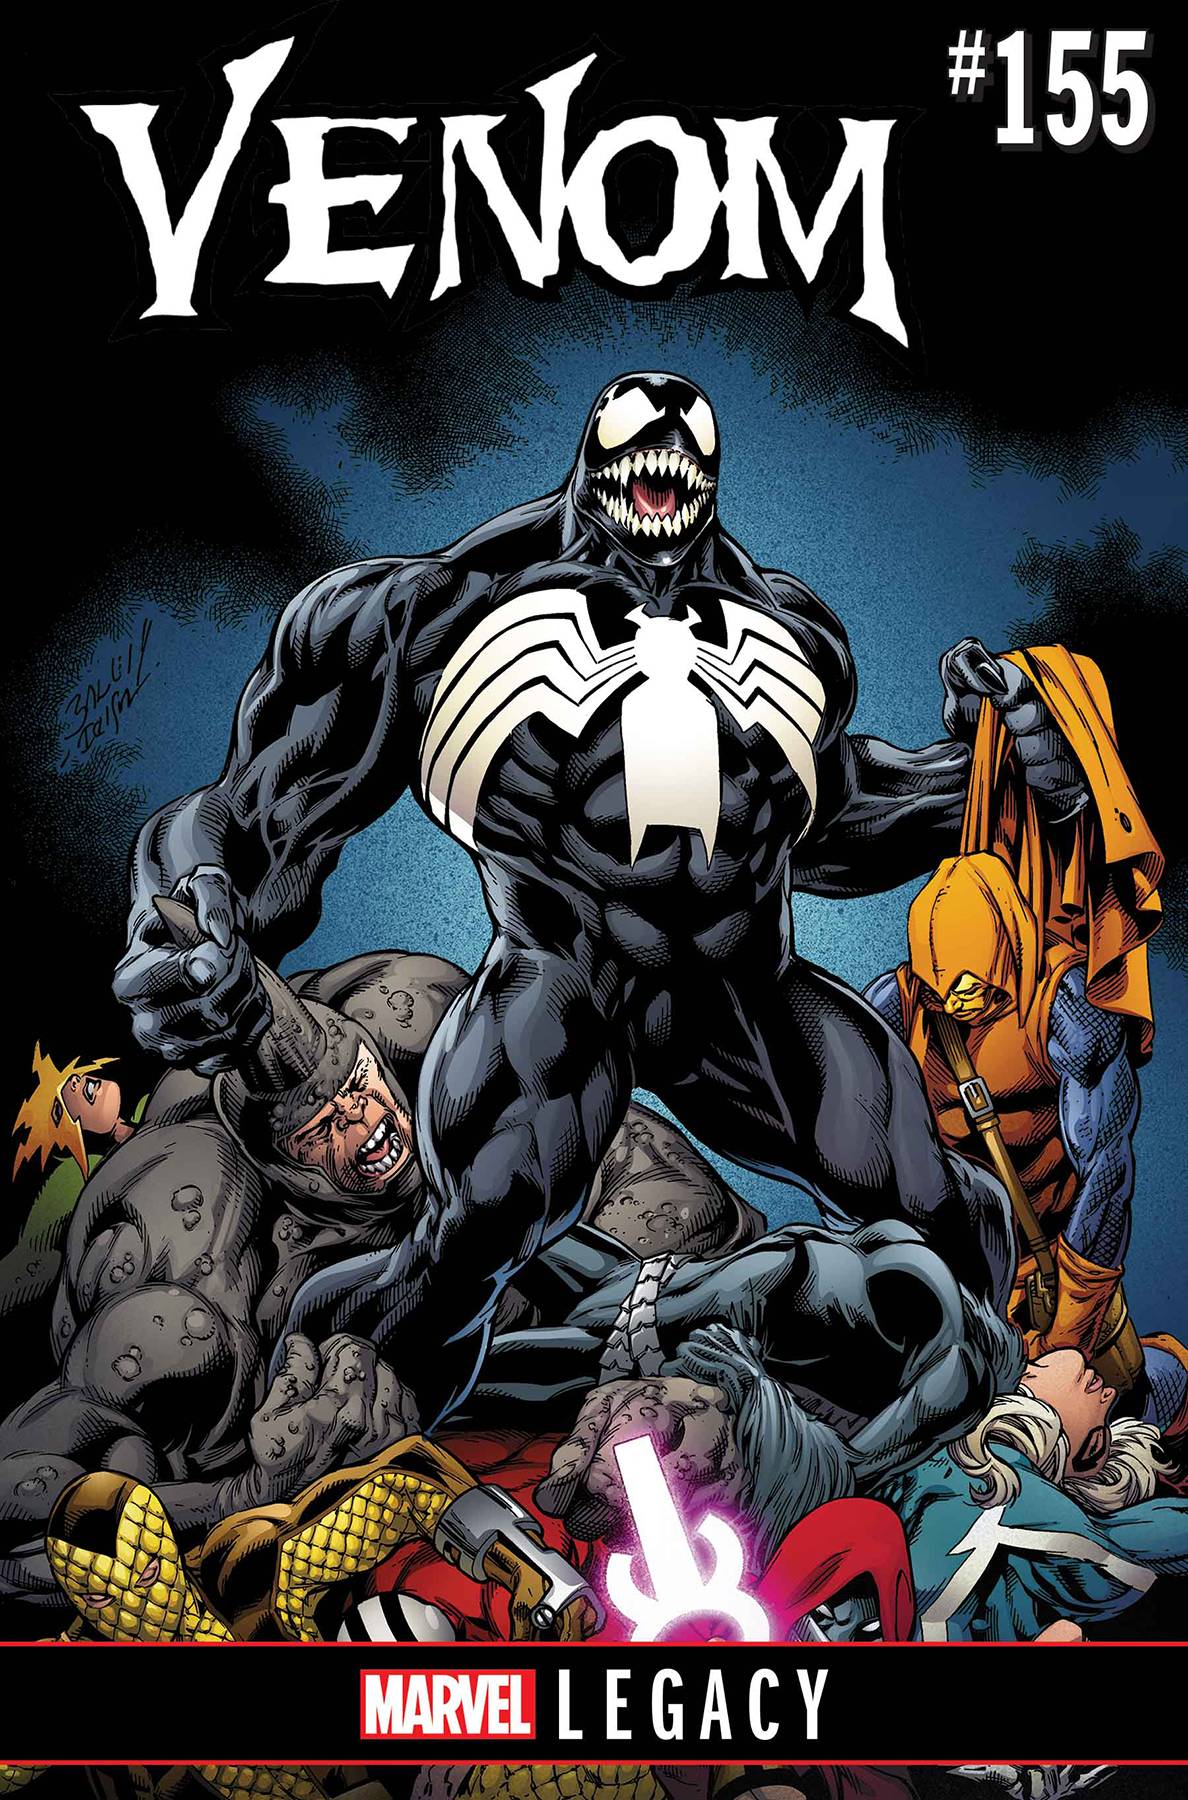 Venom #155 Legacy